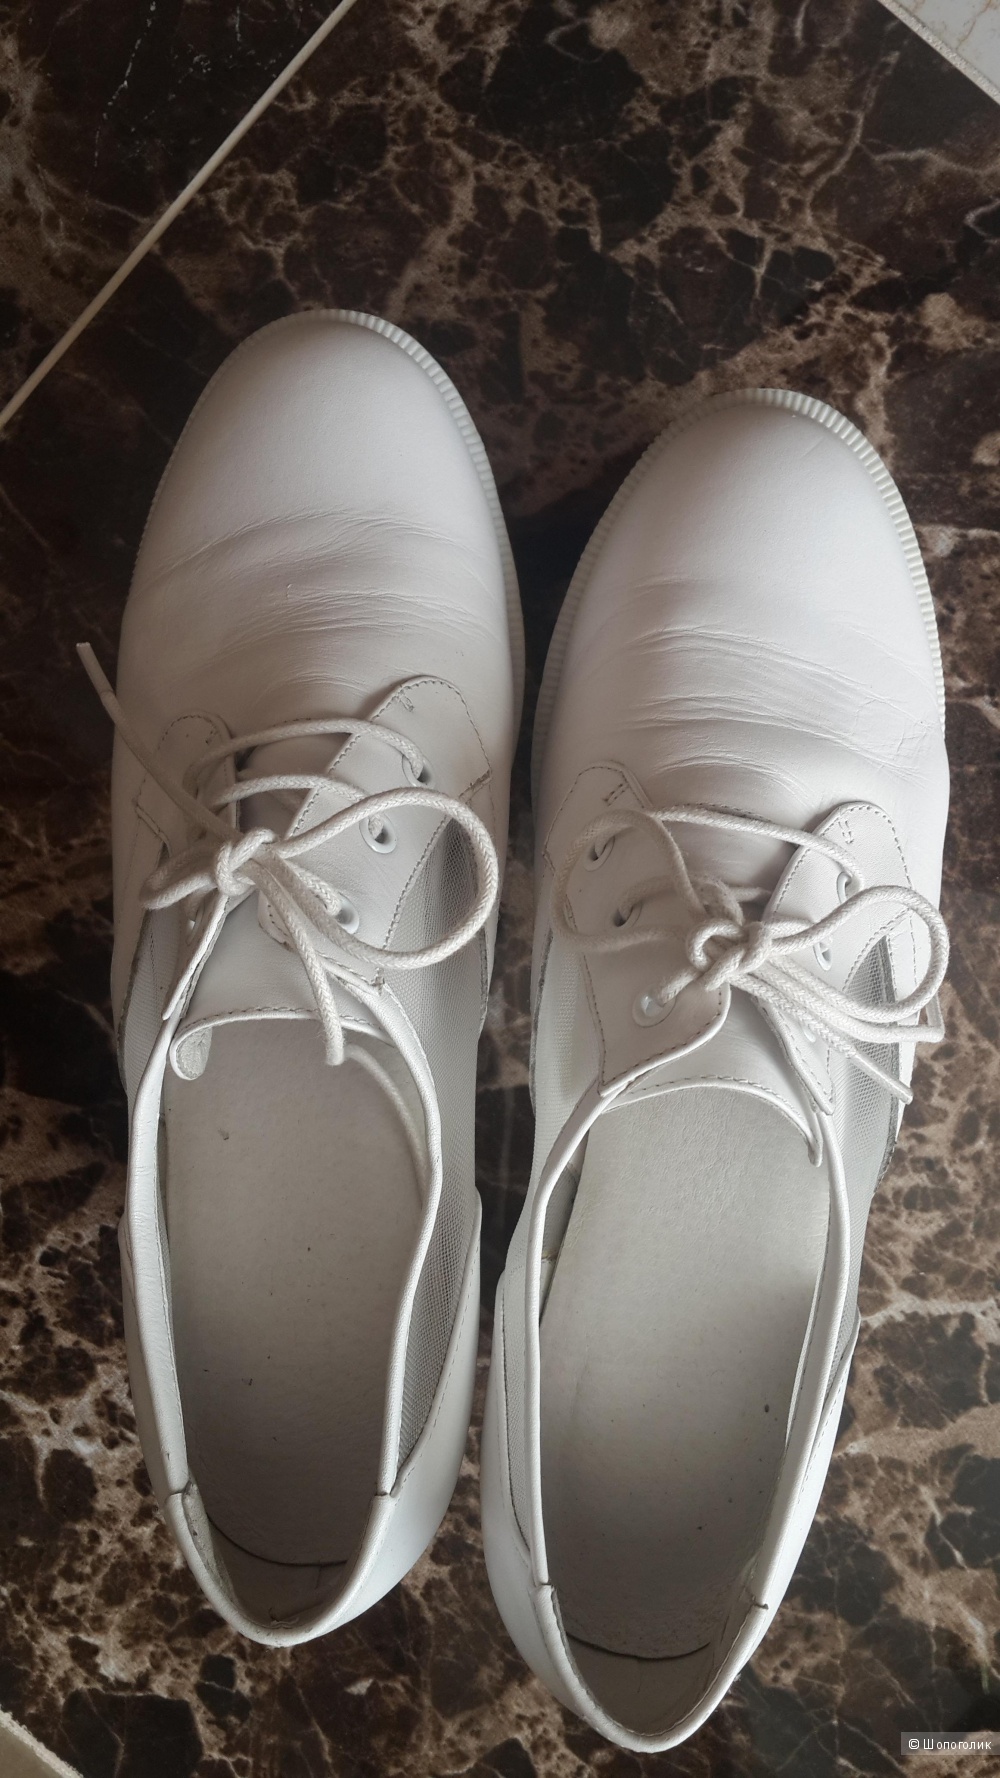 Кожаные ботинки бренд Shellys London белые 38 размер стоили 120 фунтов